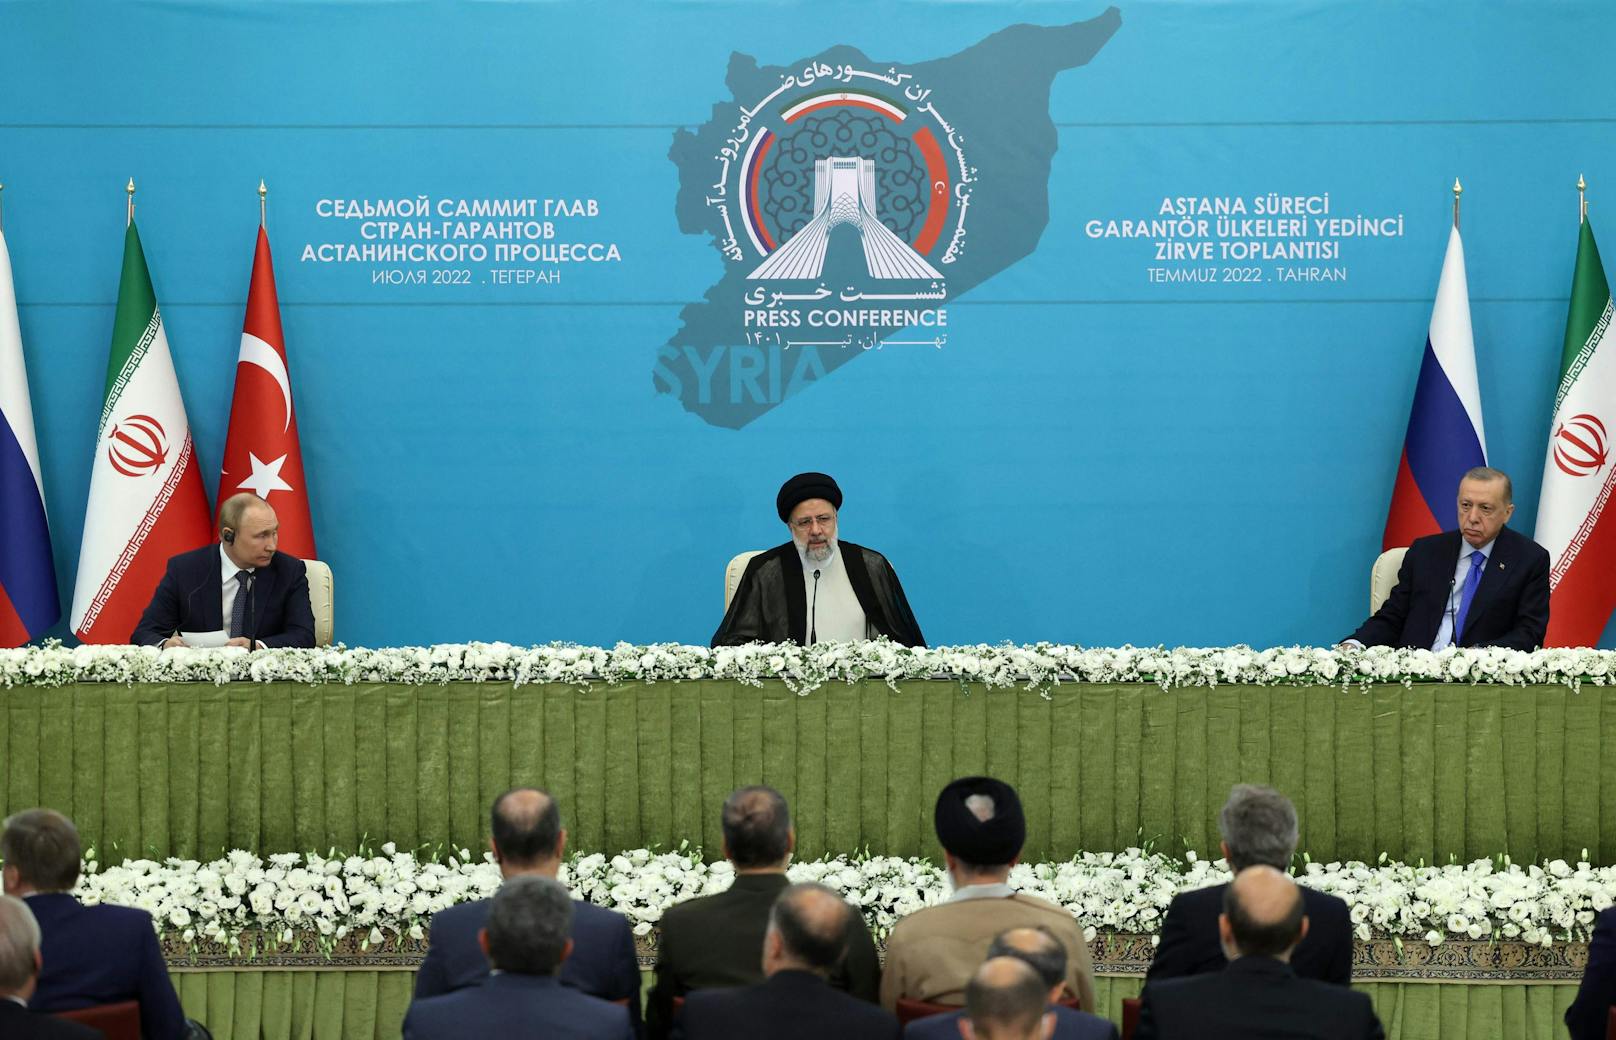 Am Dienstag (19.07.2022) fand in Irans Hauptstadt Teheran ein Gipfel mit den Präsidenten aus Russland, dem Iran und der Türkei statt.